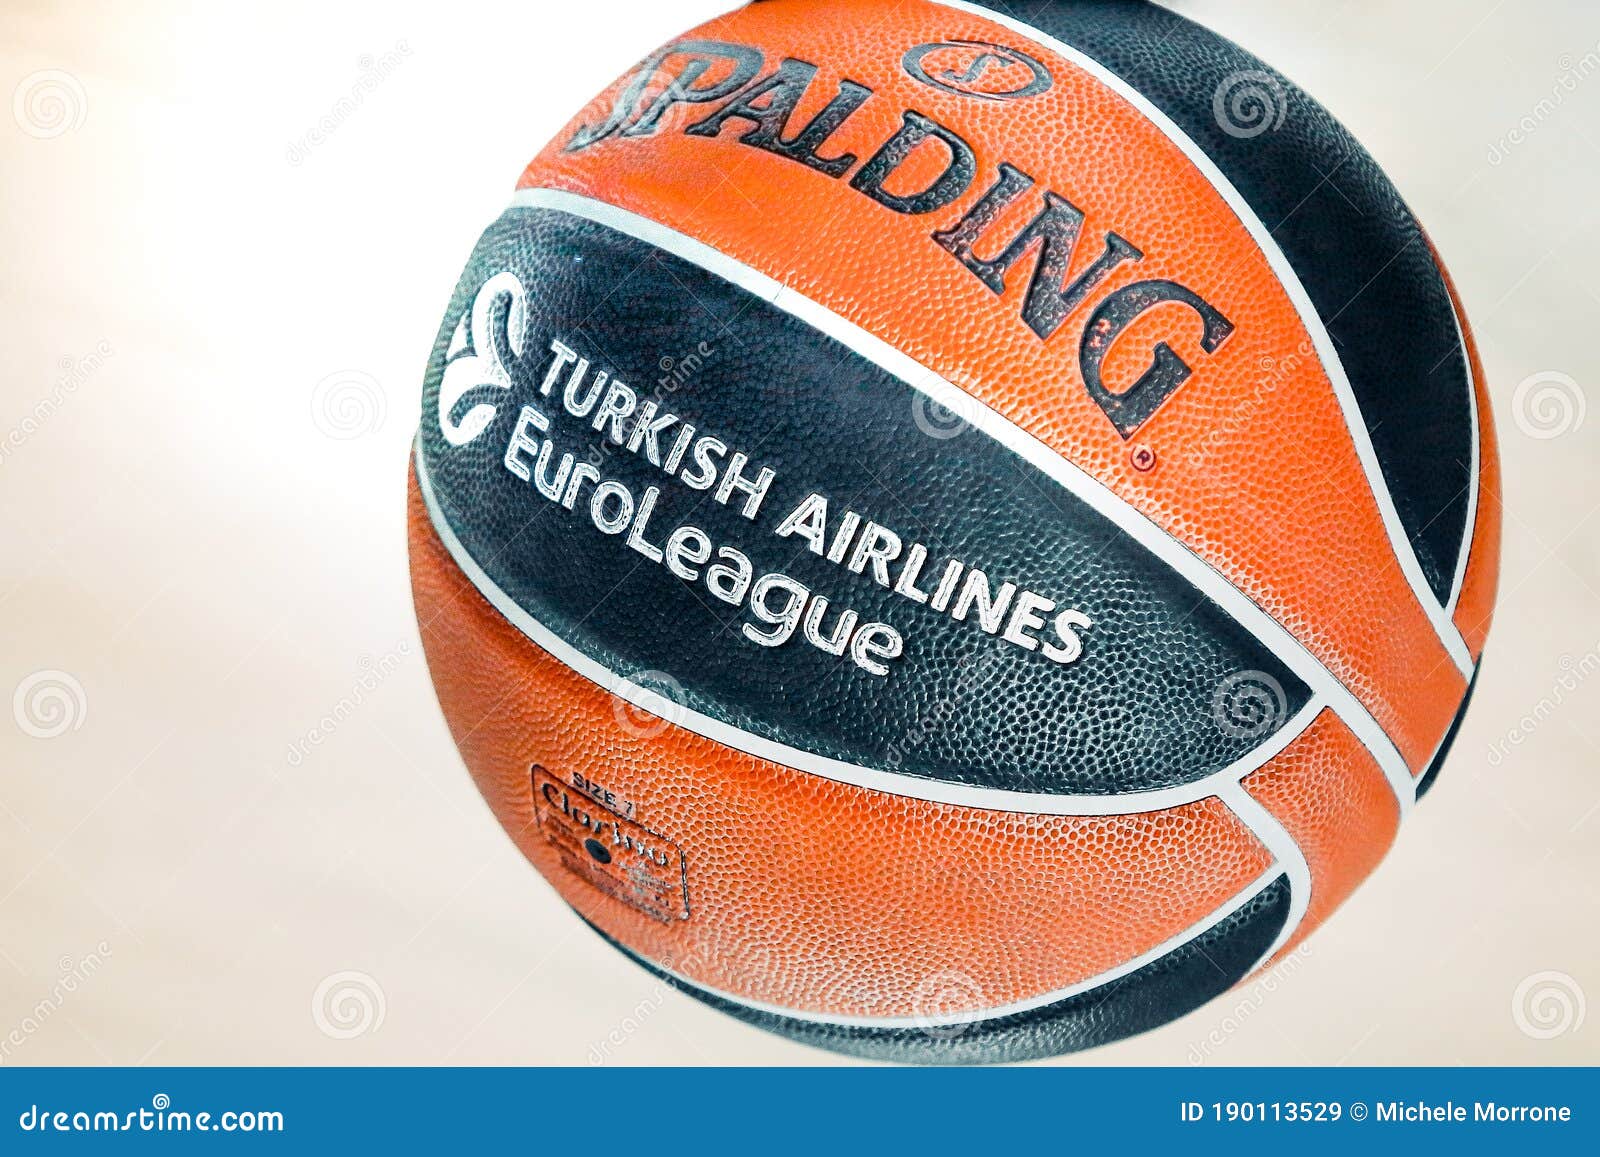 Amtlicher Spielball Der Euroleague Basketball Redaktionelles Stockbild